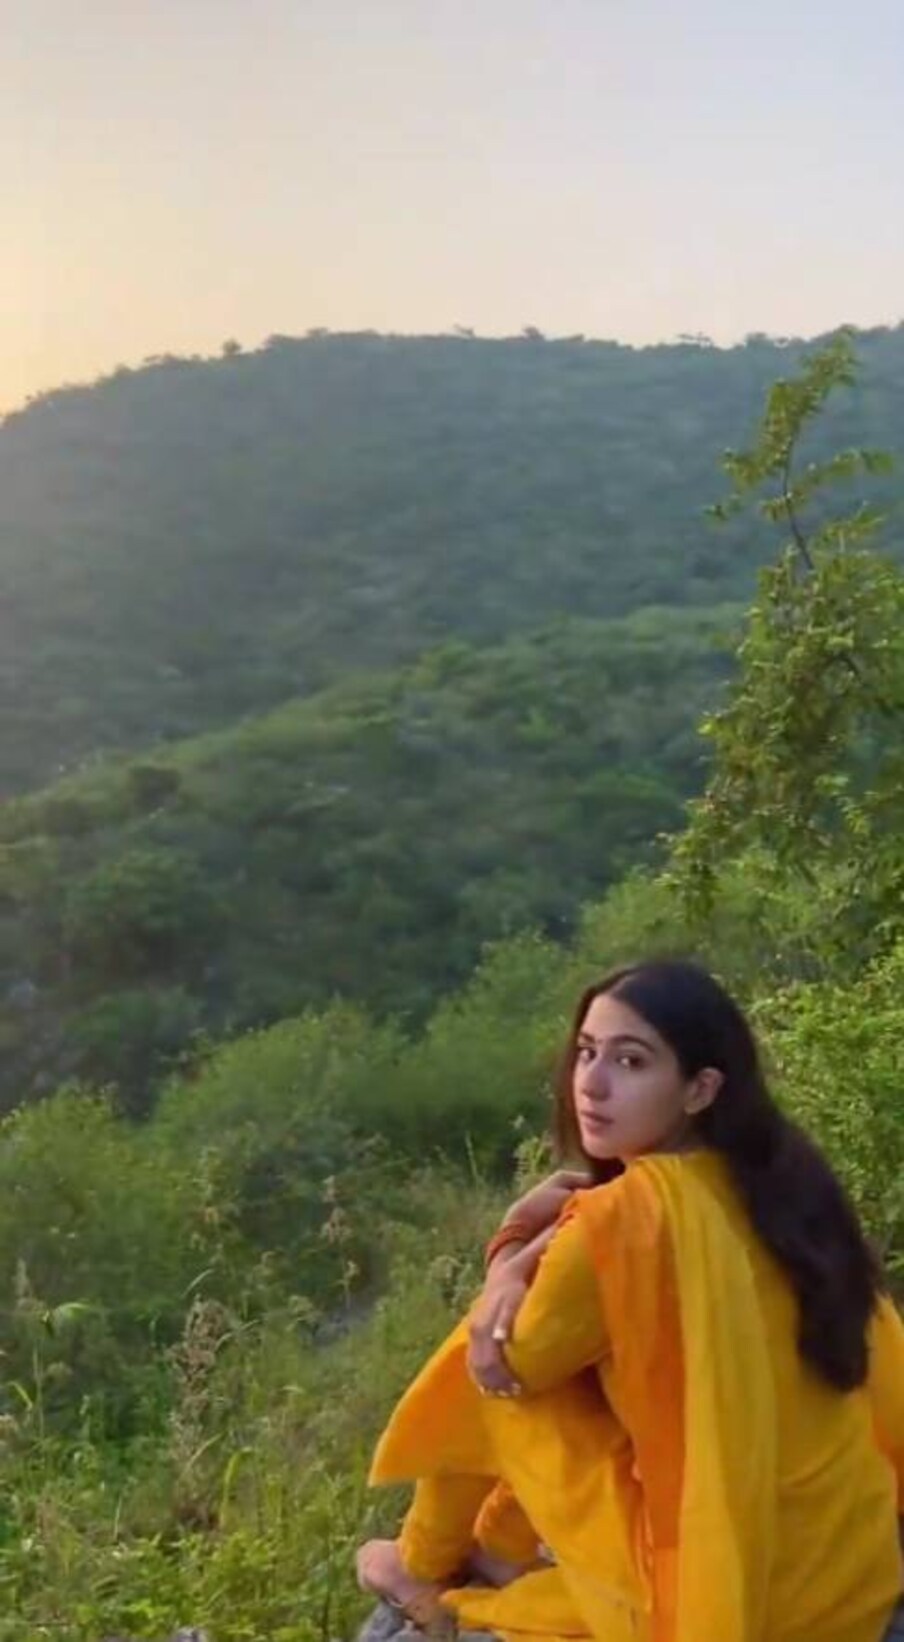 साराने मंदिराभोवतलचा एक व्हिडिओ देखील शेअर केला आहे. यामध्ये ती एका टेकडीच्या बाजूला बसून निसर्गाचा आनंद घेत आहे. 